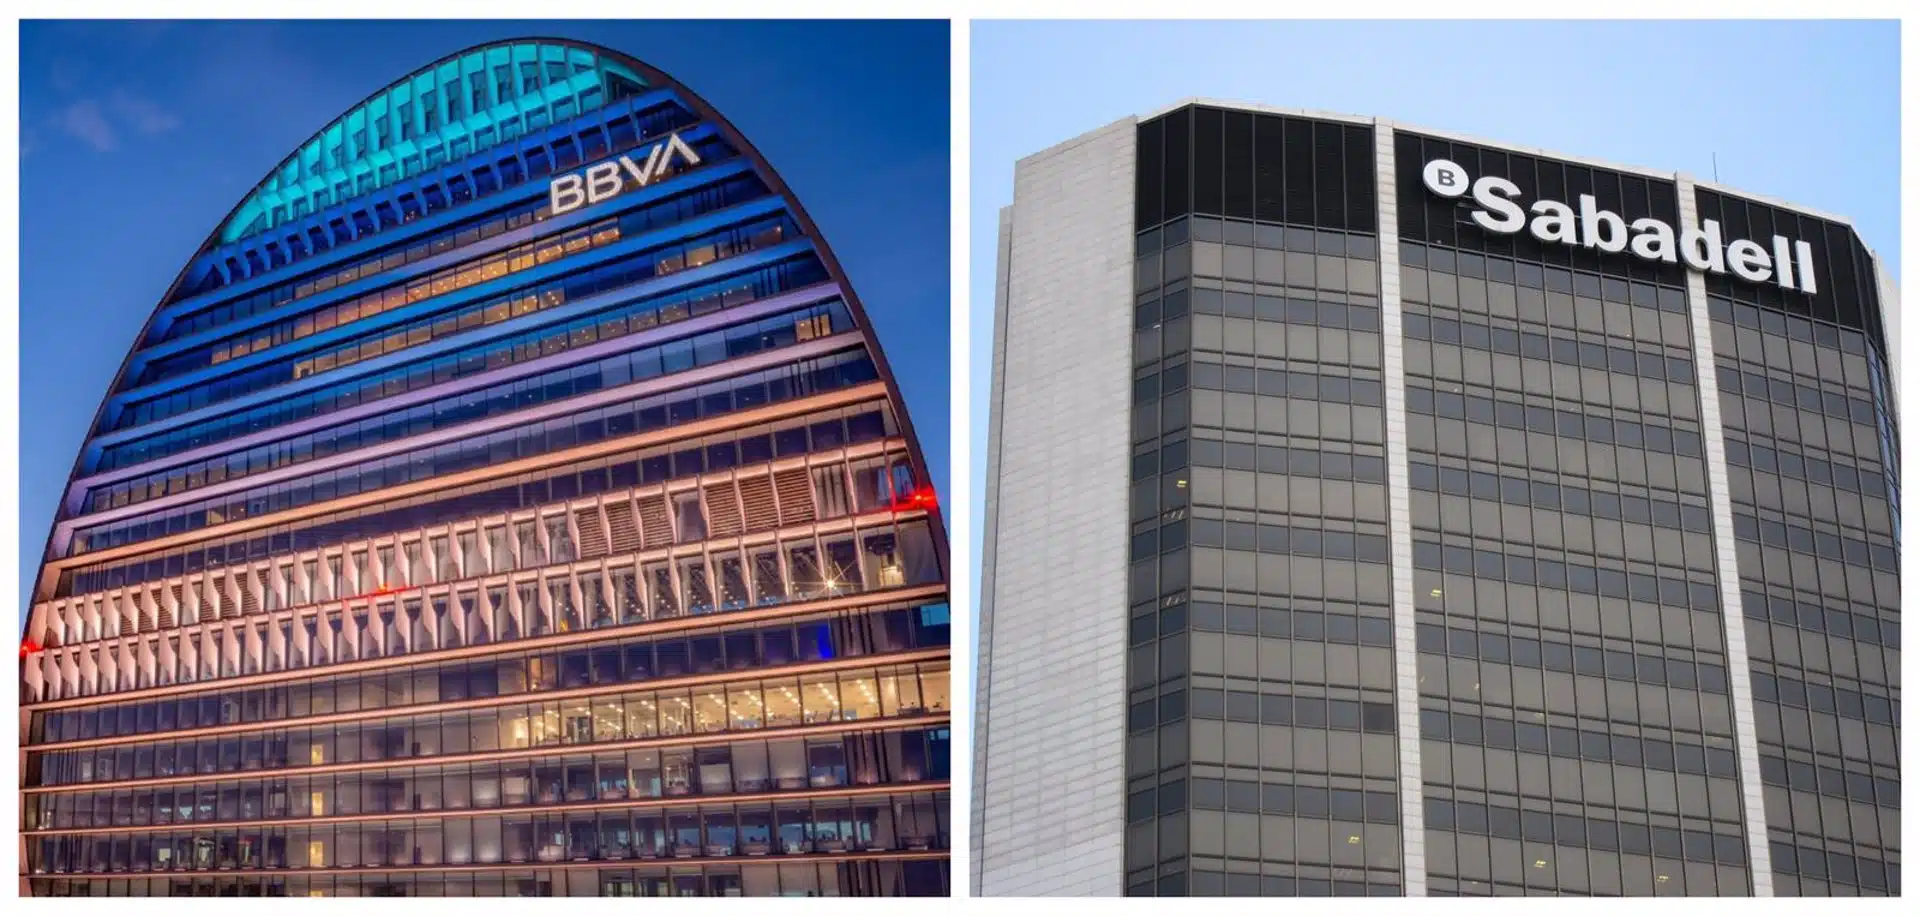 Banco Sabadell rechaza la oferta de fusión de BBVA, entiende que generará más valor en solitario